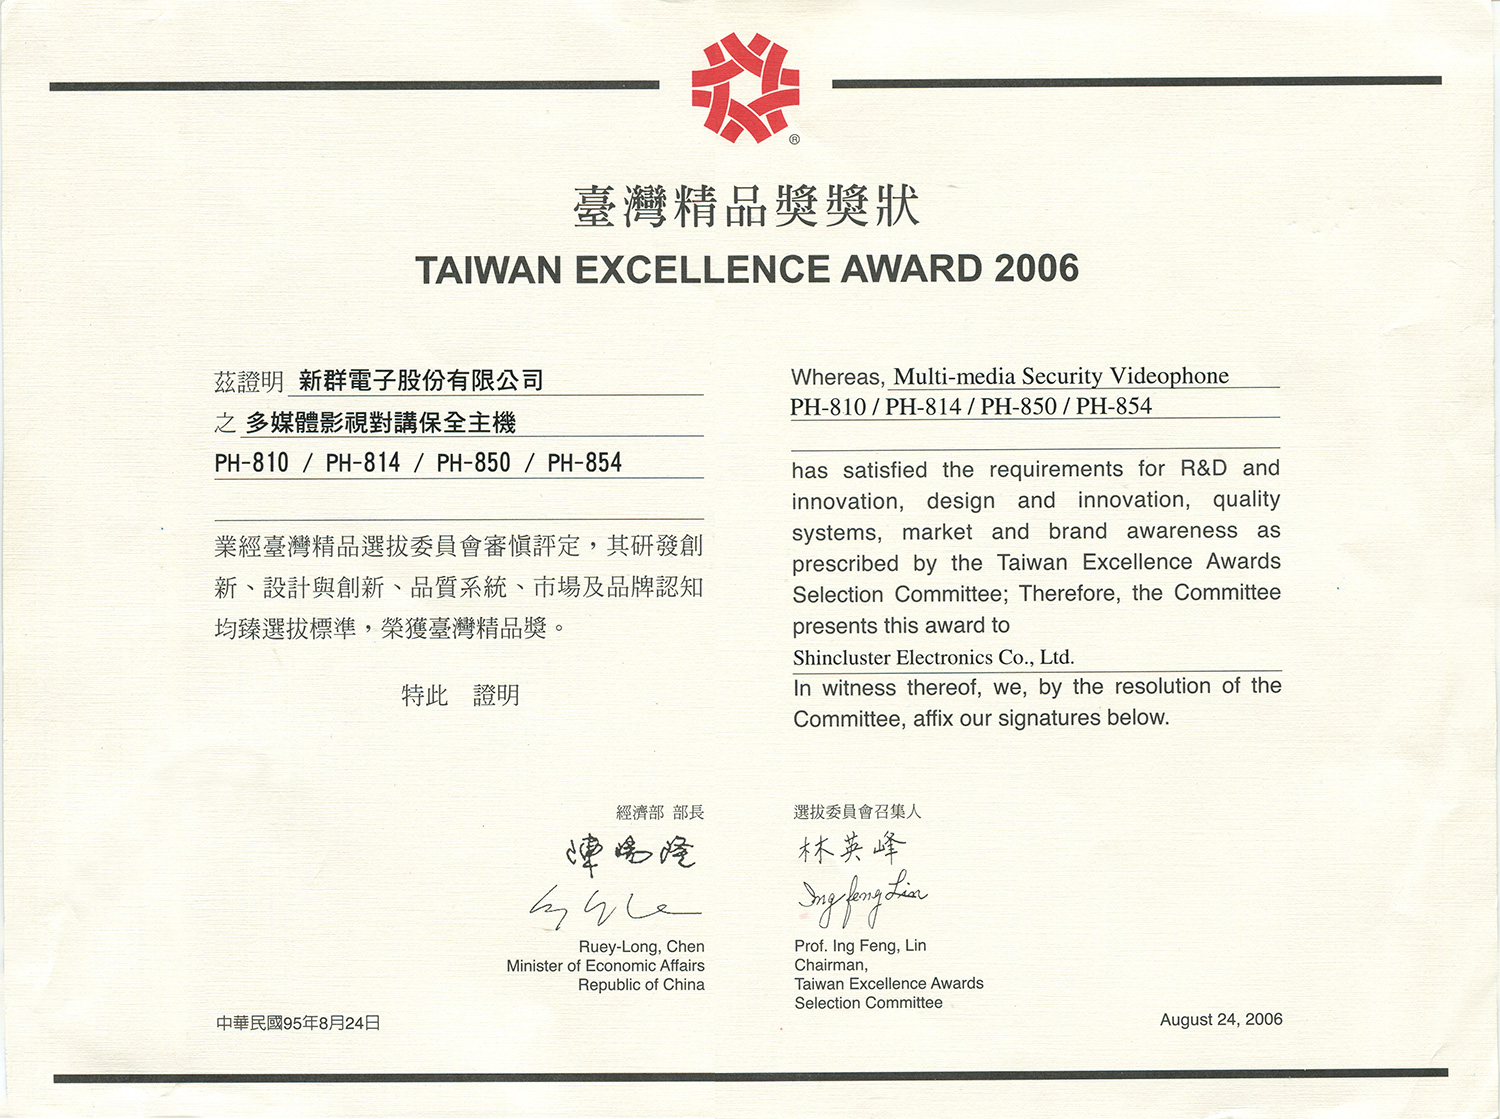 多媒體影視對講保全主機PH-810產品系列，榮獲「第14屆台灣精品獎」之殊榮。